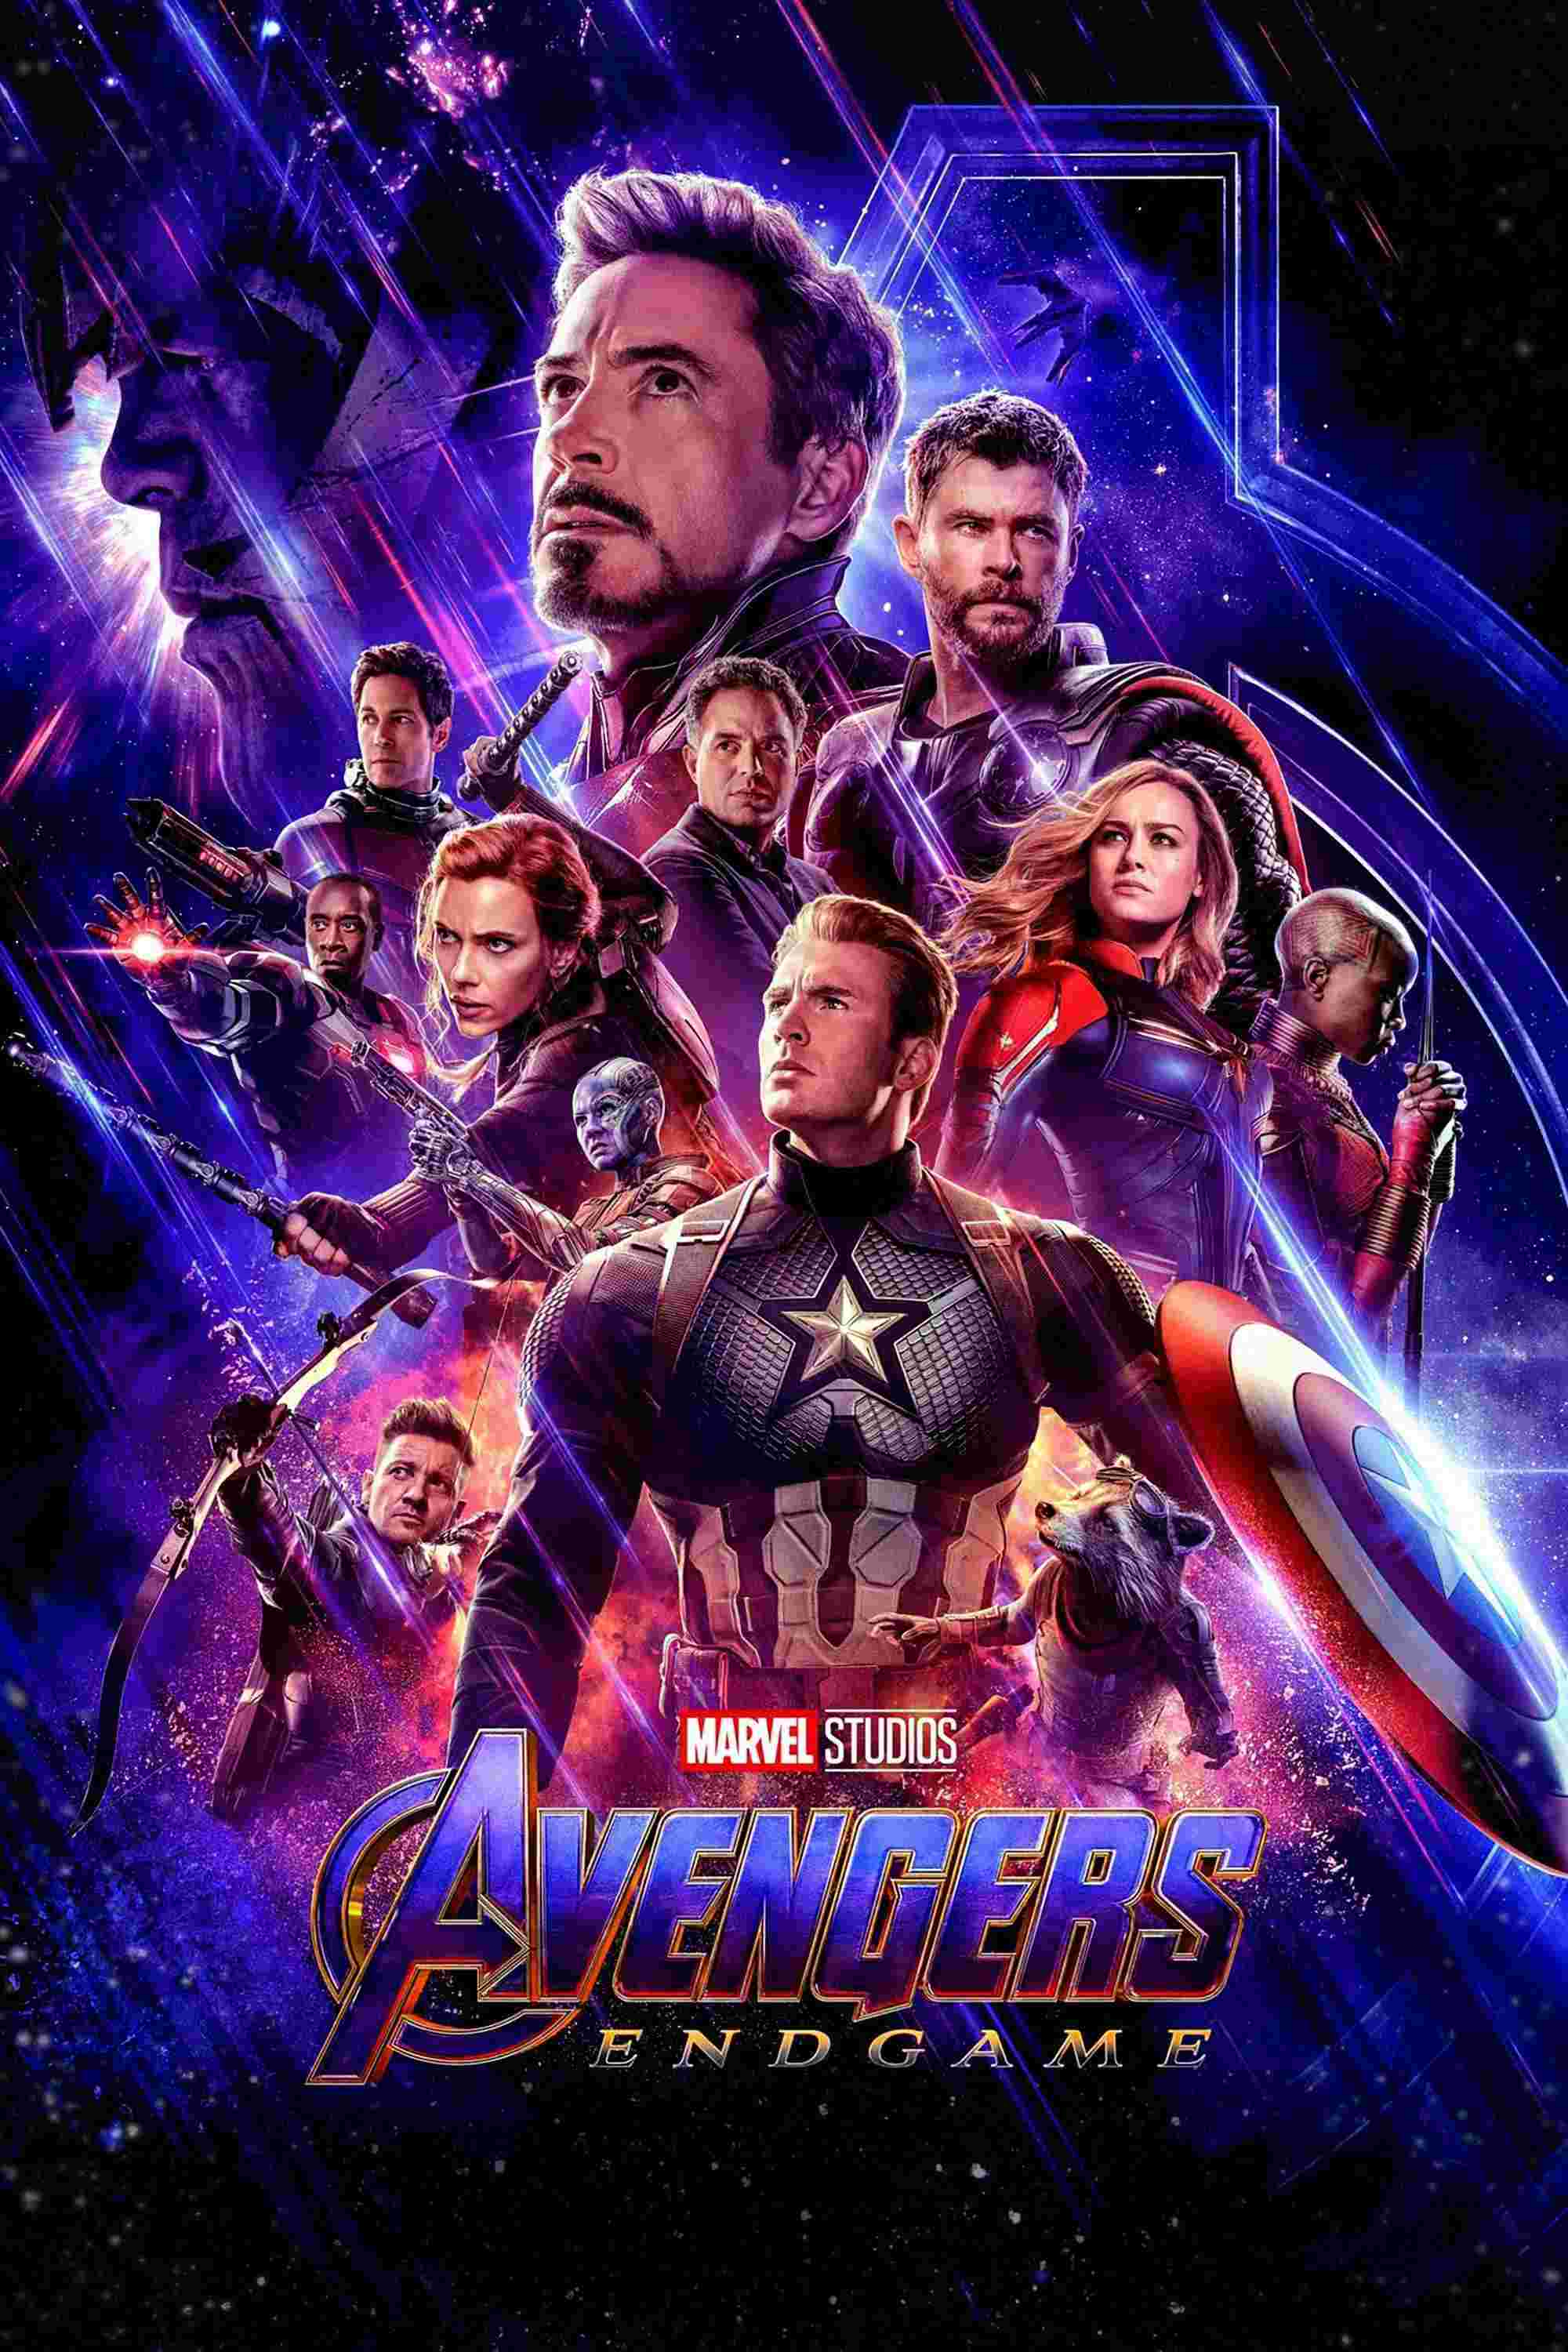 Avengers: Endgame (2019) Robert Downey Jr.